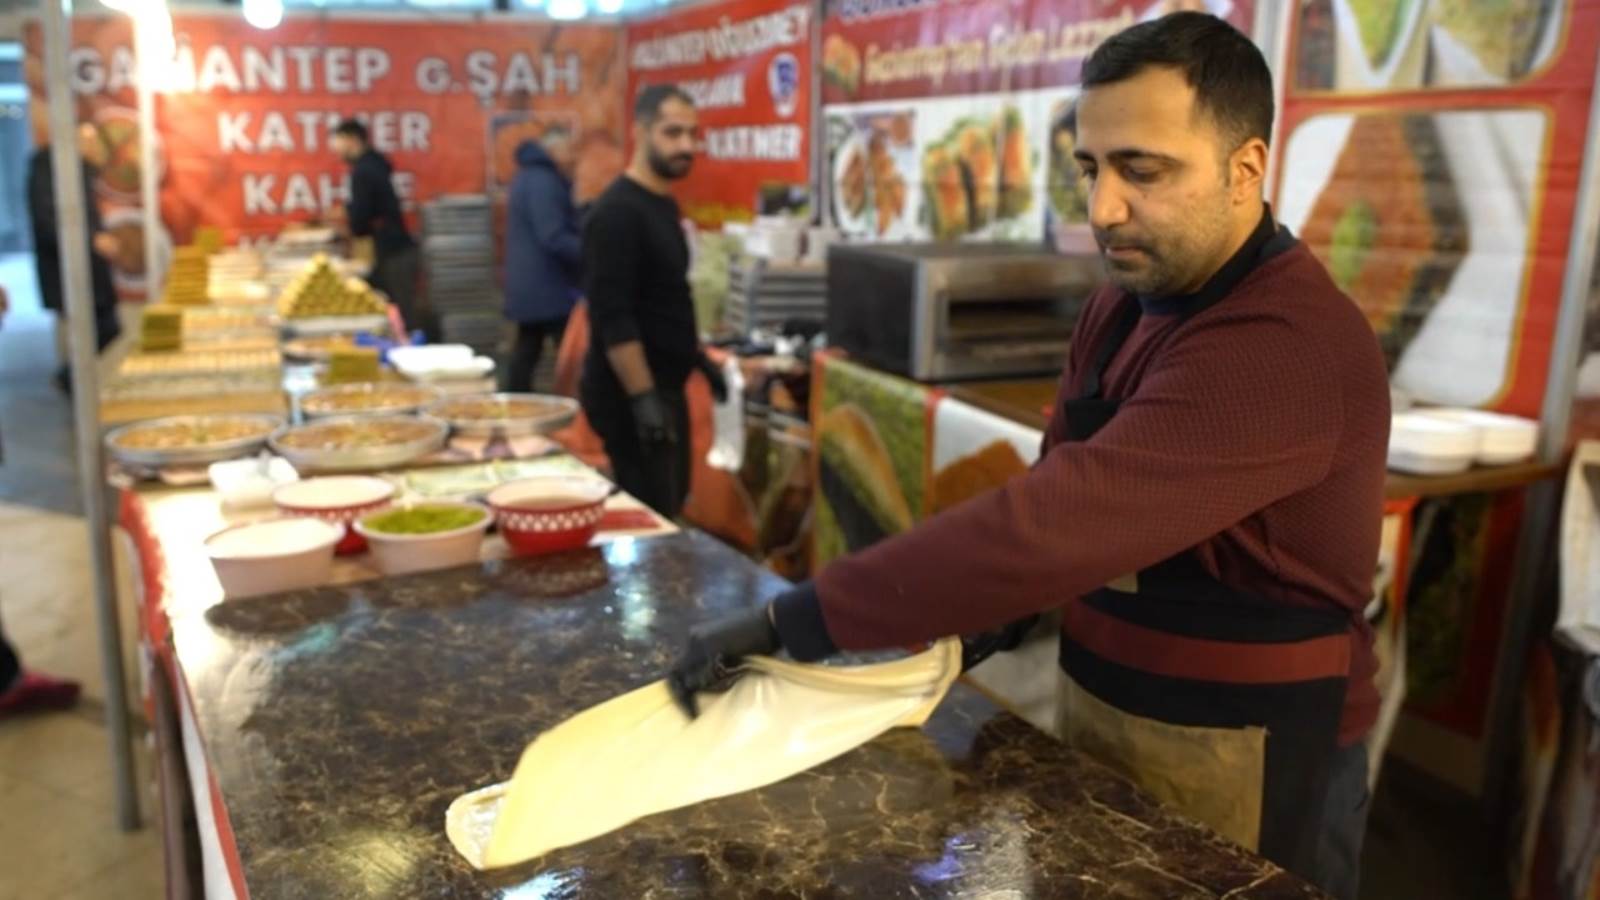 Gaziantep Yemek Şenliği'nde kebap yeme yarışması yapıldı, baba oğul kıyasıya yarıştı